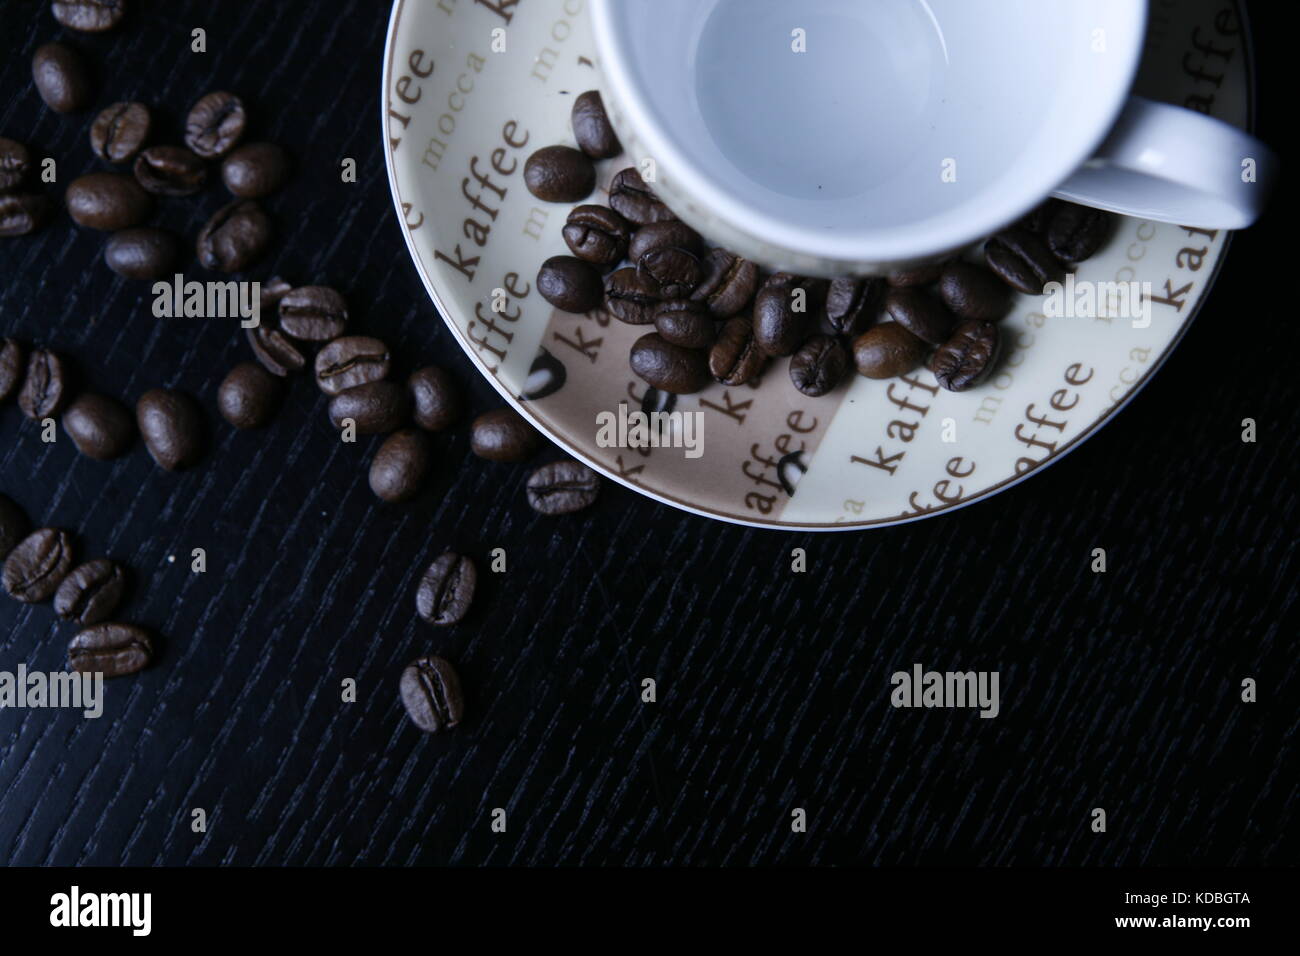 Moccatasse kaffeetasse mit verstreuten Kaffee Bohnen auf schwarzem tisch - Mocca cup coffee cup with scattered coffee beans on black table Stock Photo